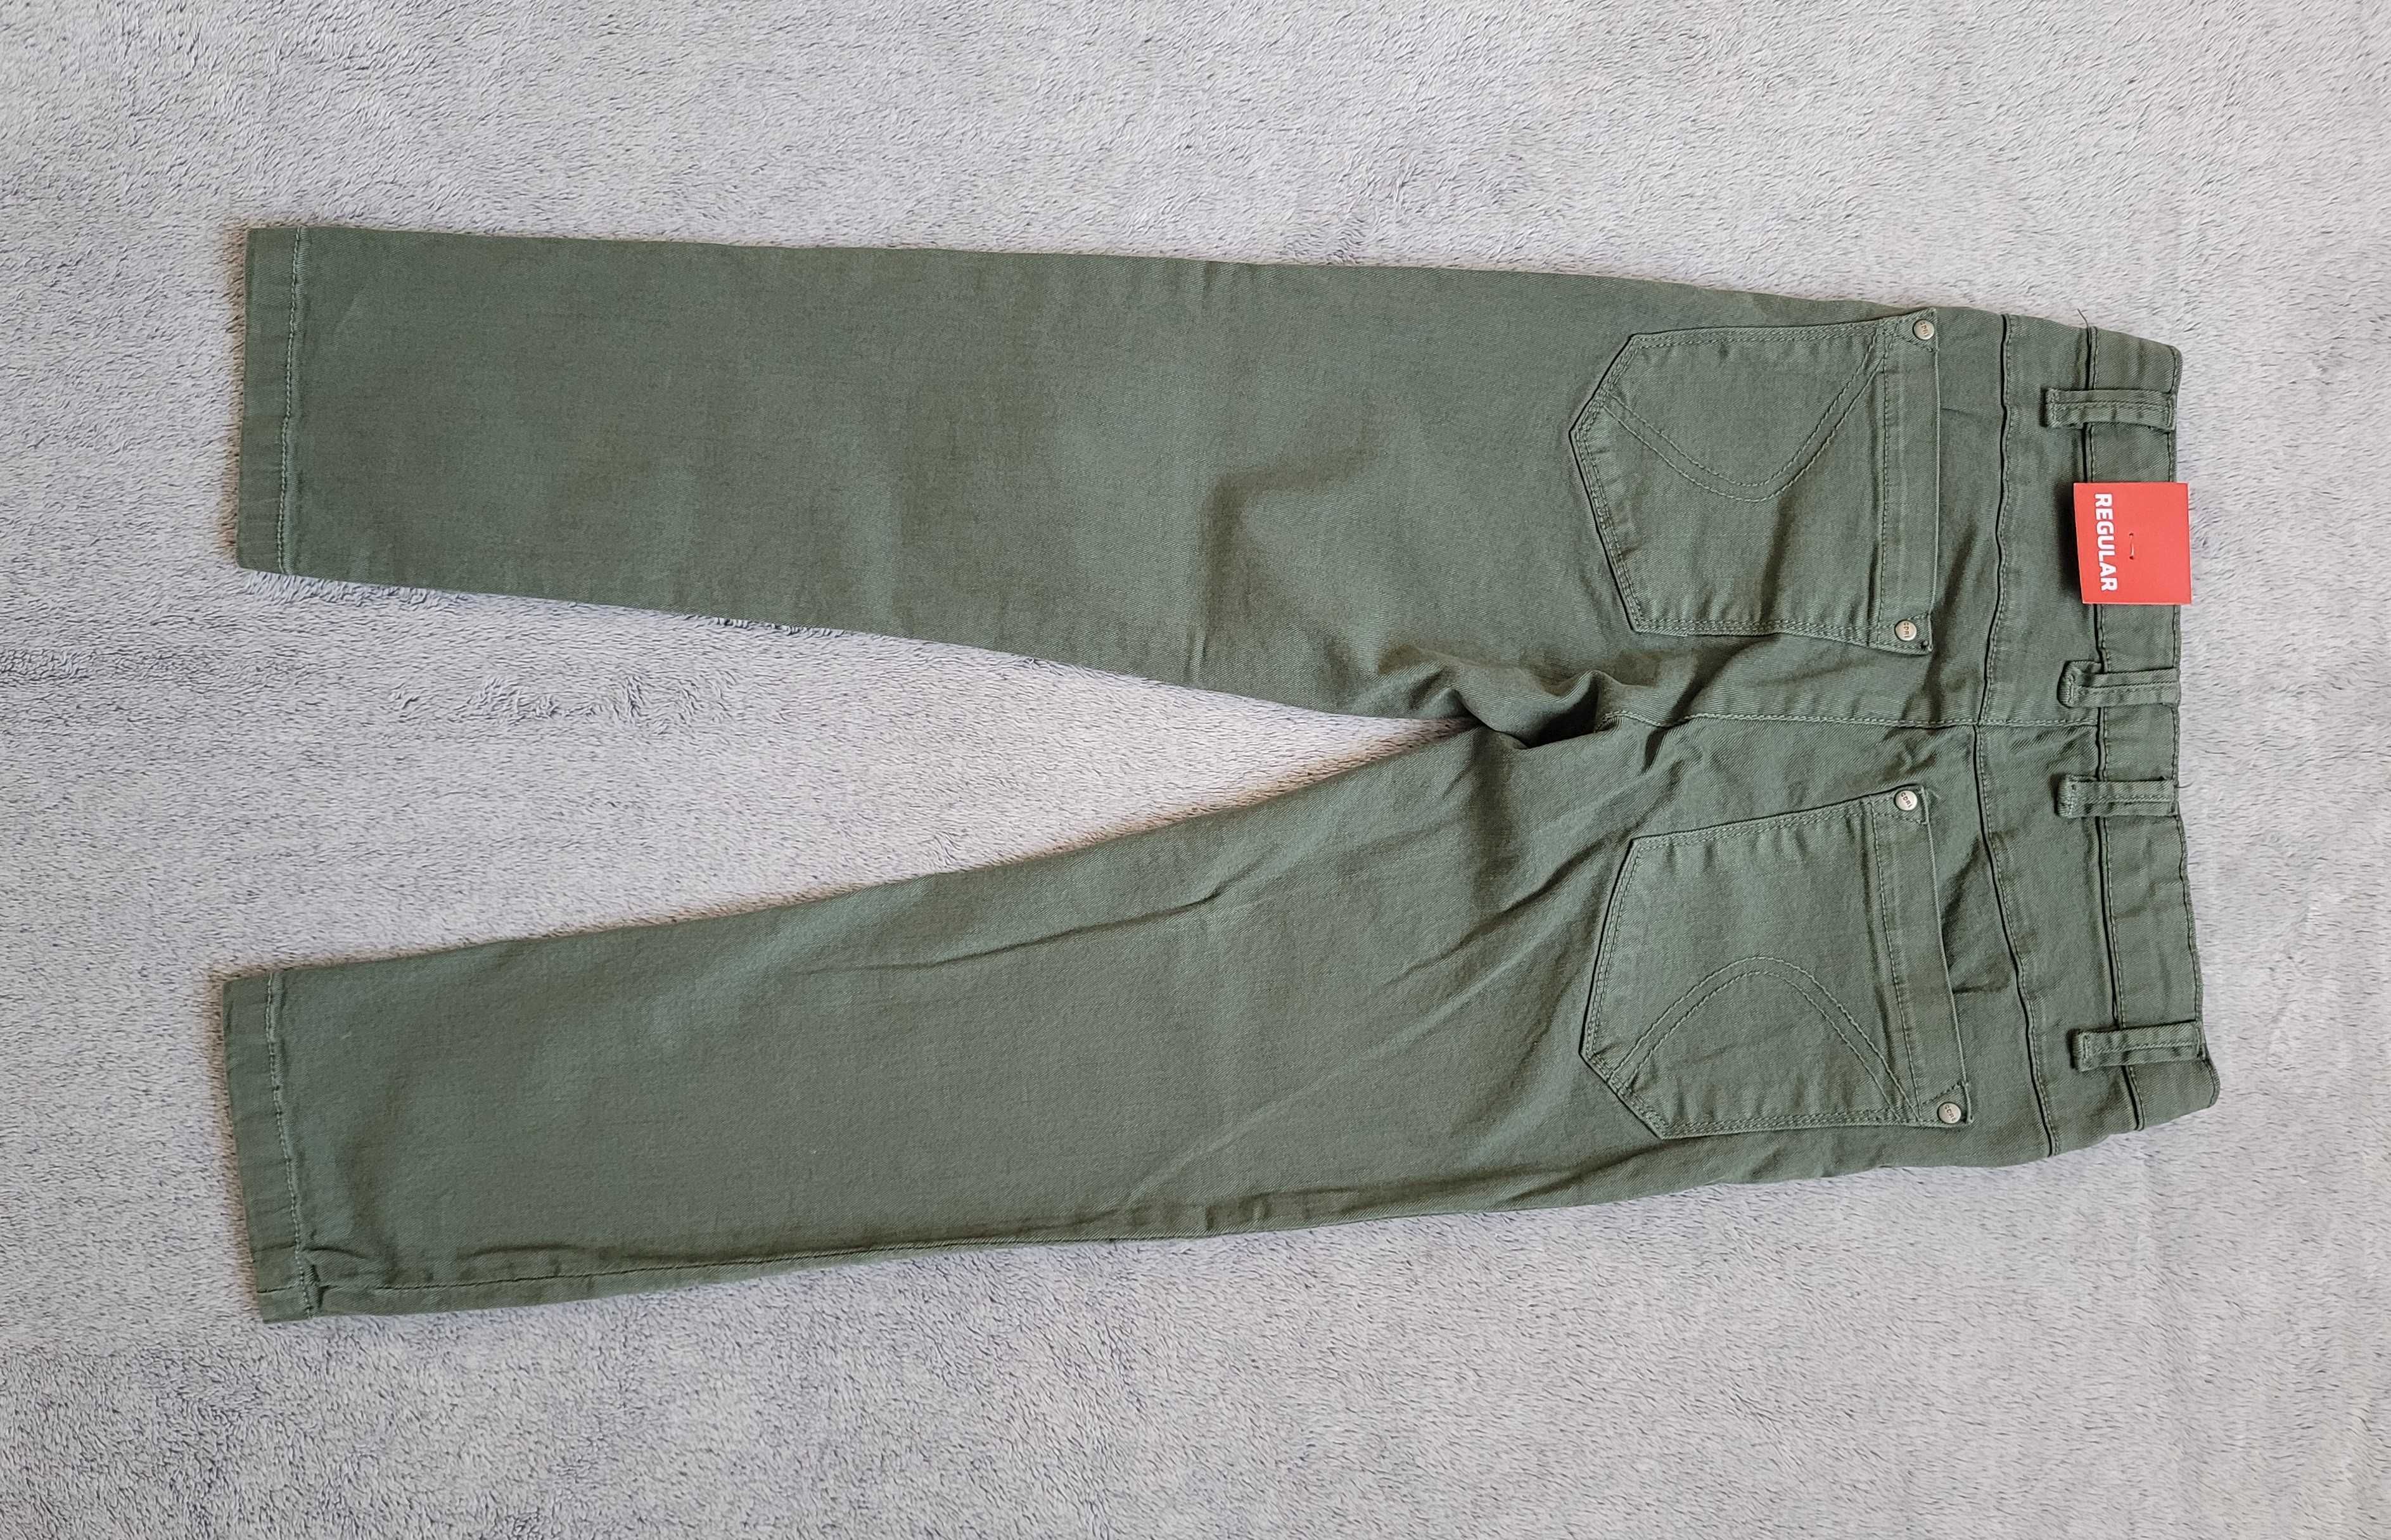 Spodnie dla chłopca Coccodrillo rozmiar 128. Nowe.